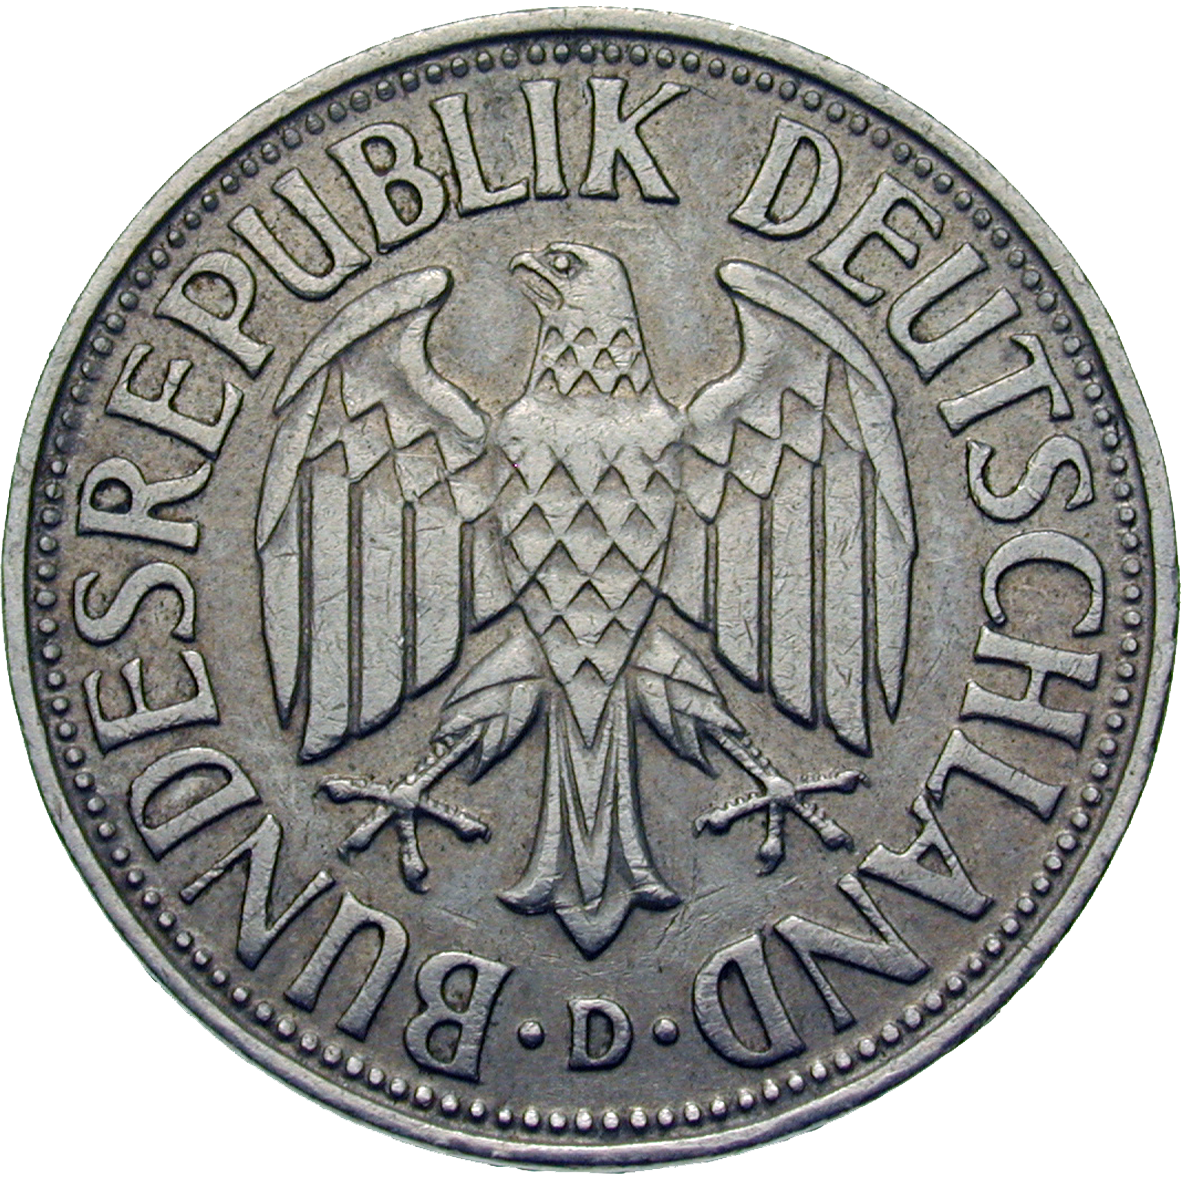 Bundesrepublik Deutschland, 1 Deutsche Mark 1955 (obverse)